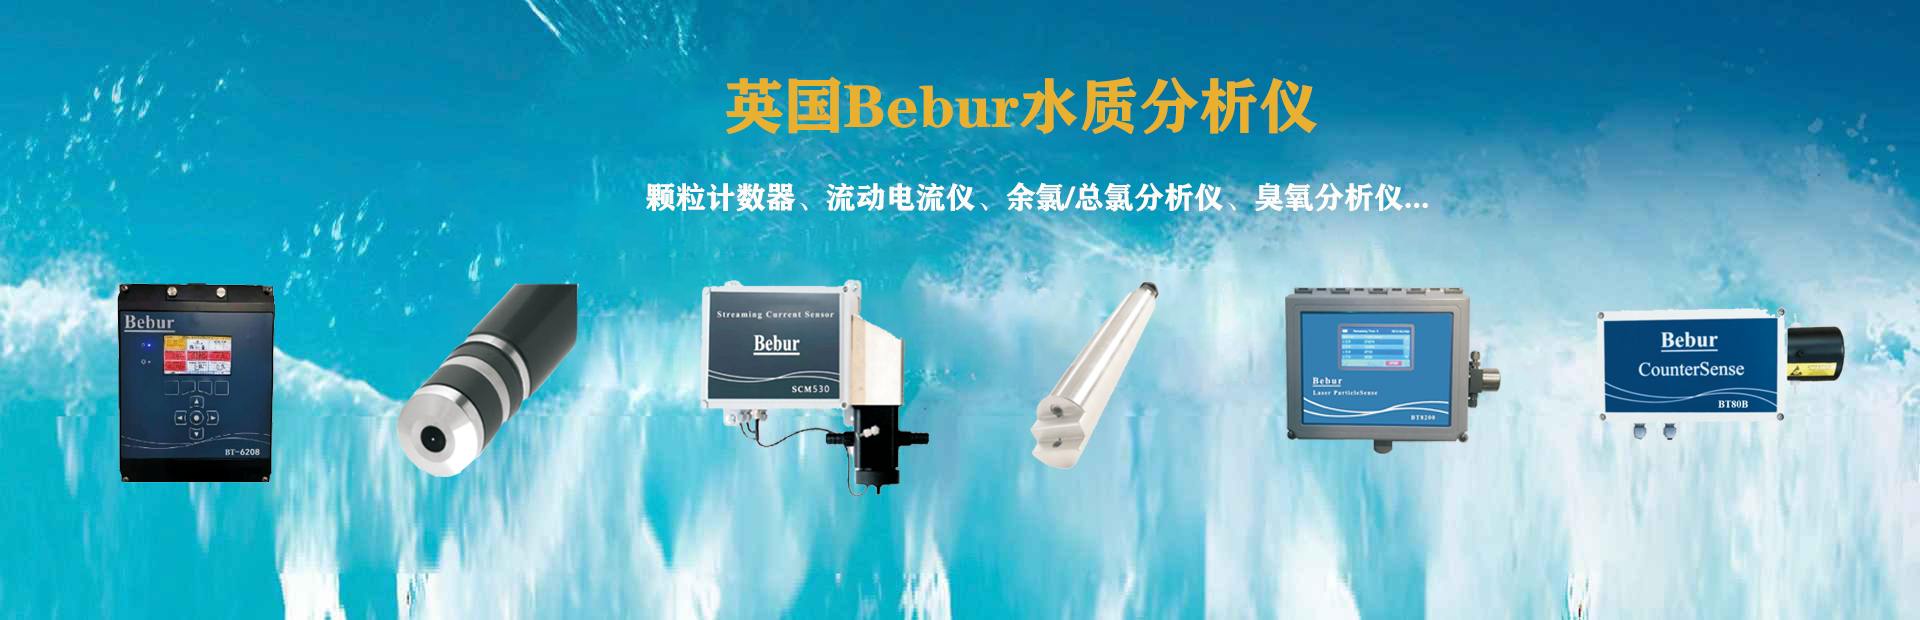 Bebur多功能水质仪器系列产品